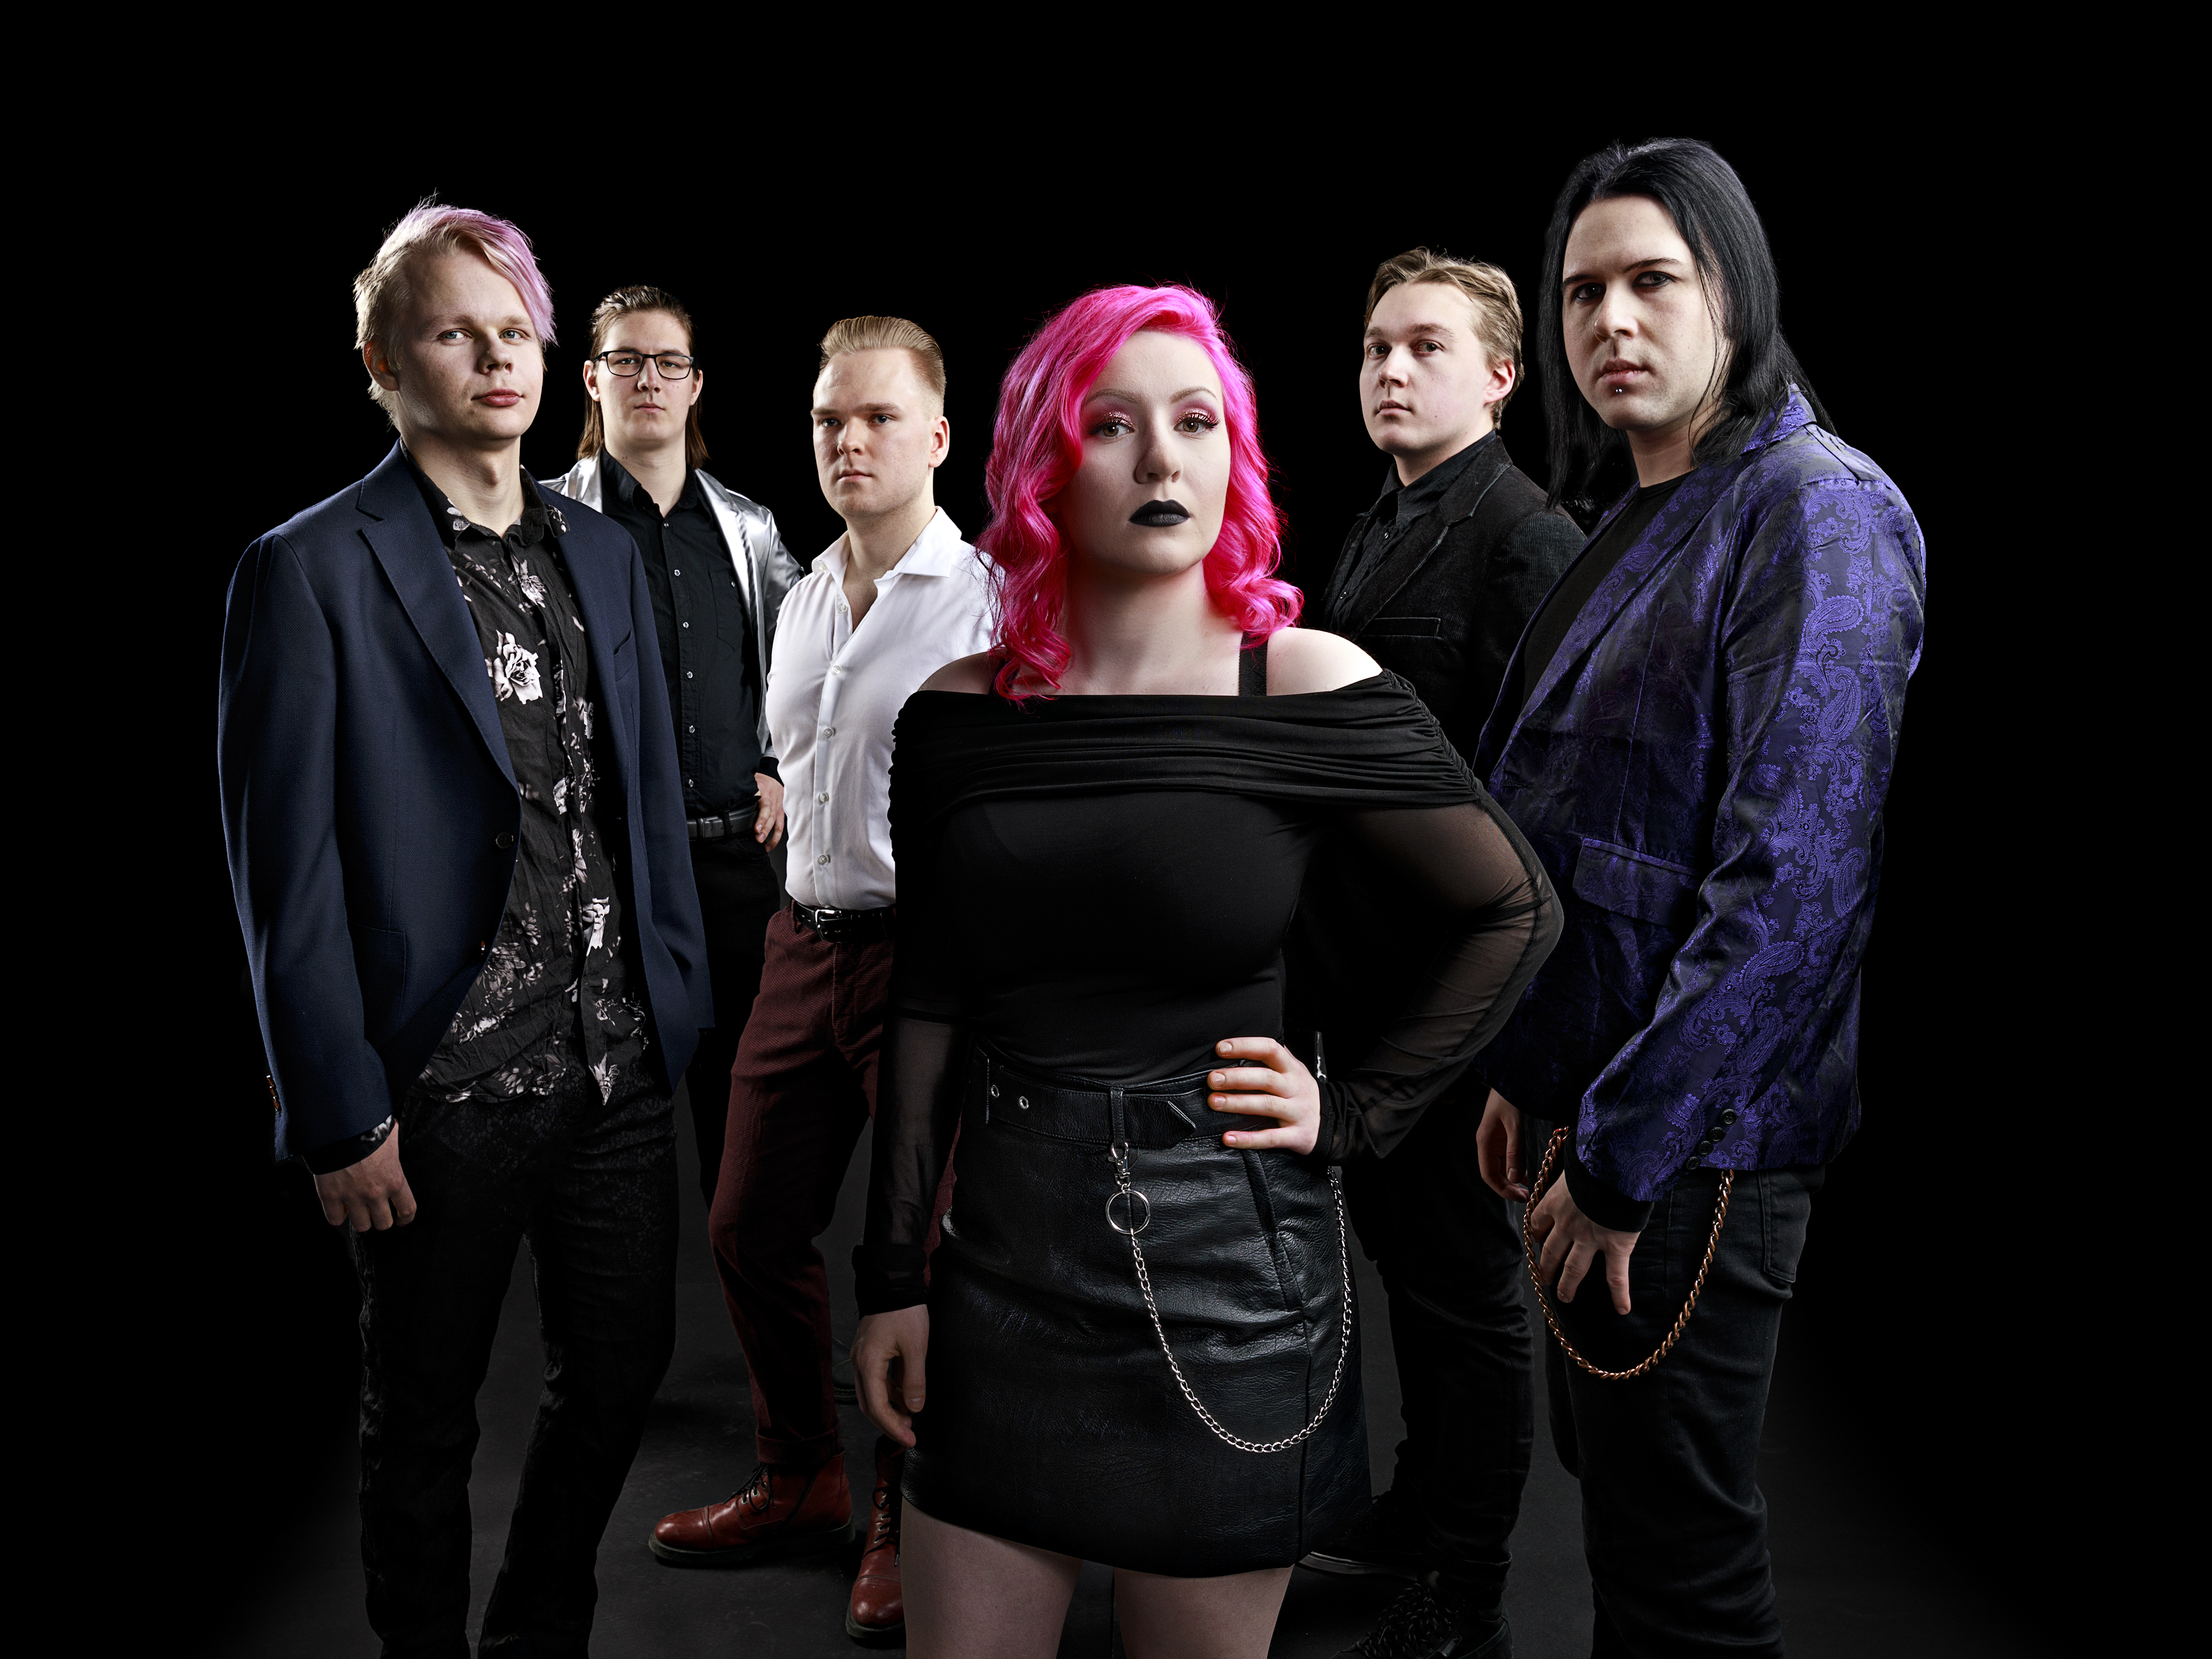 Kuvassa on kuvattu mustaa taustaa vasten kuusihenkinen yhtye Sirakh.